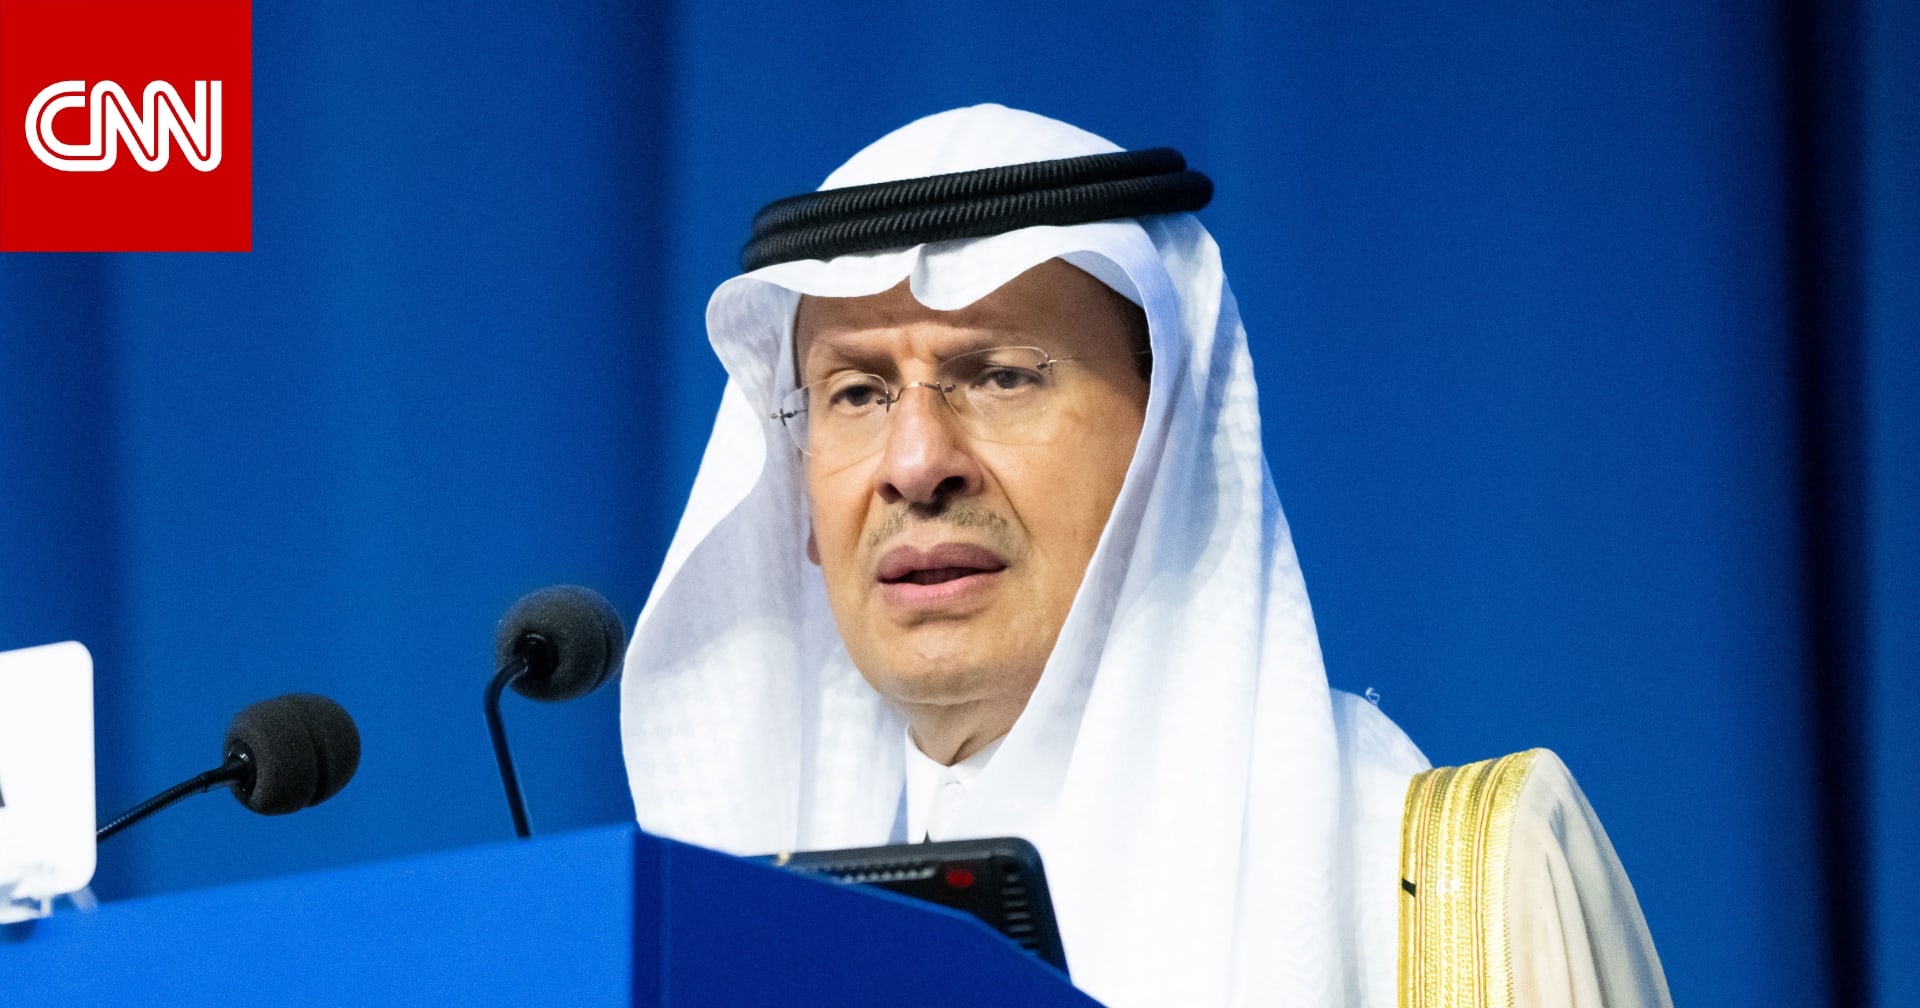 السعودية لم تؤسس بتوقيع قرار أممي أو إزالة احتلال.. وزير الطاقة يثير تفاعلا بفيديو سابق